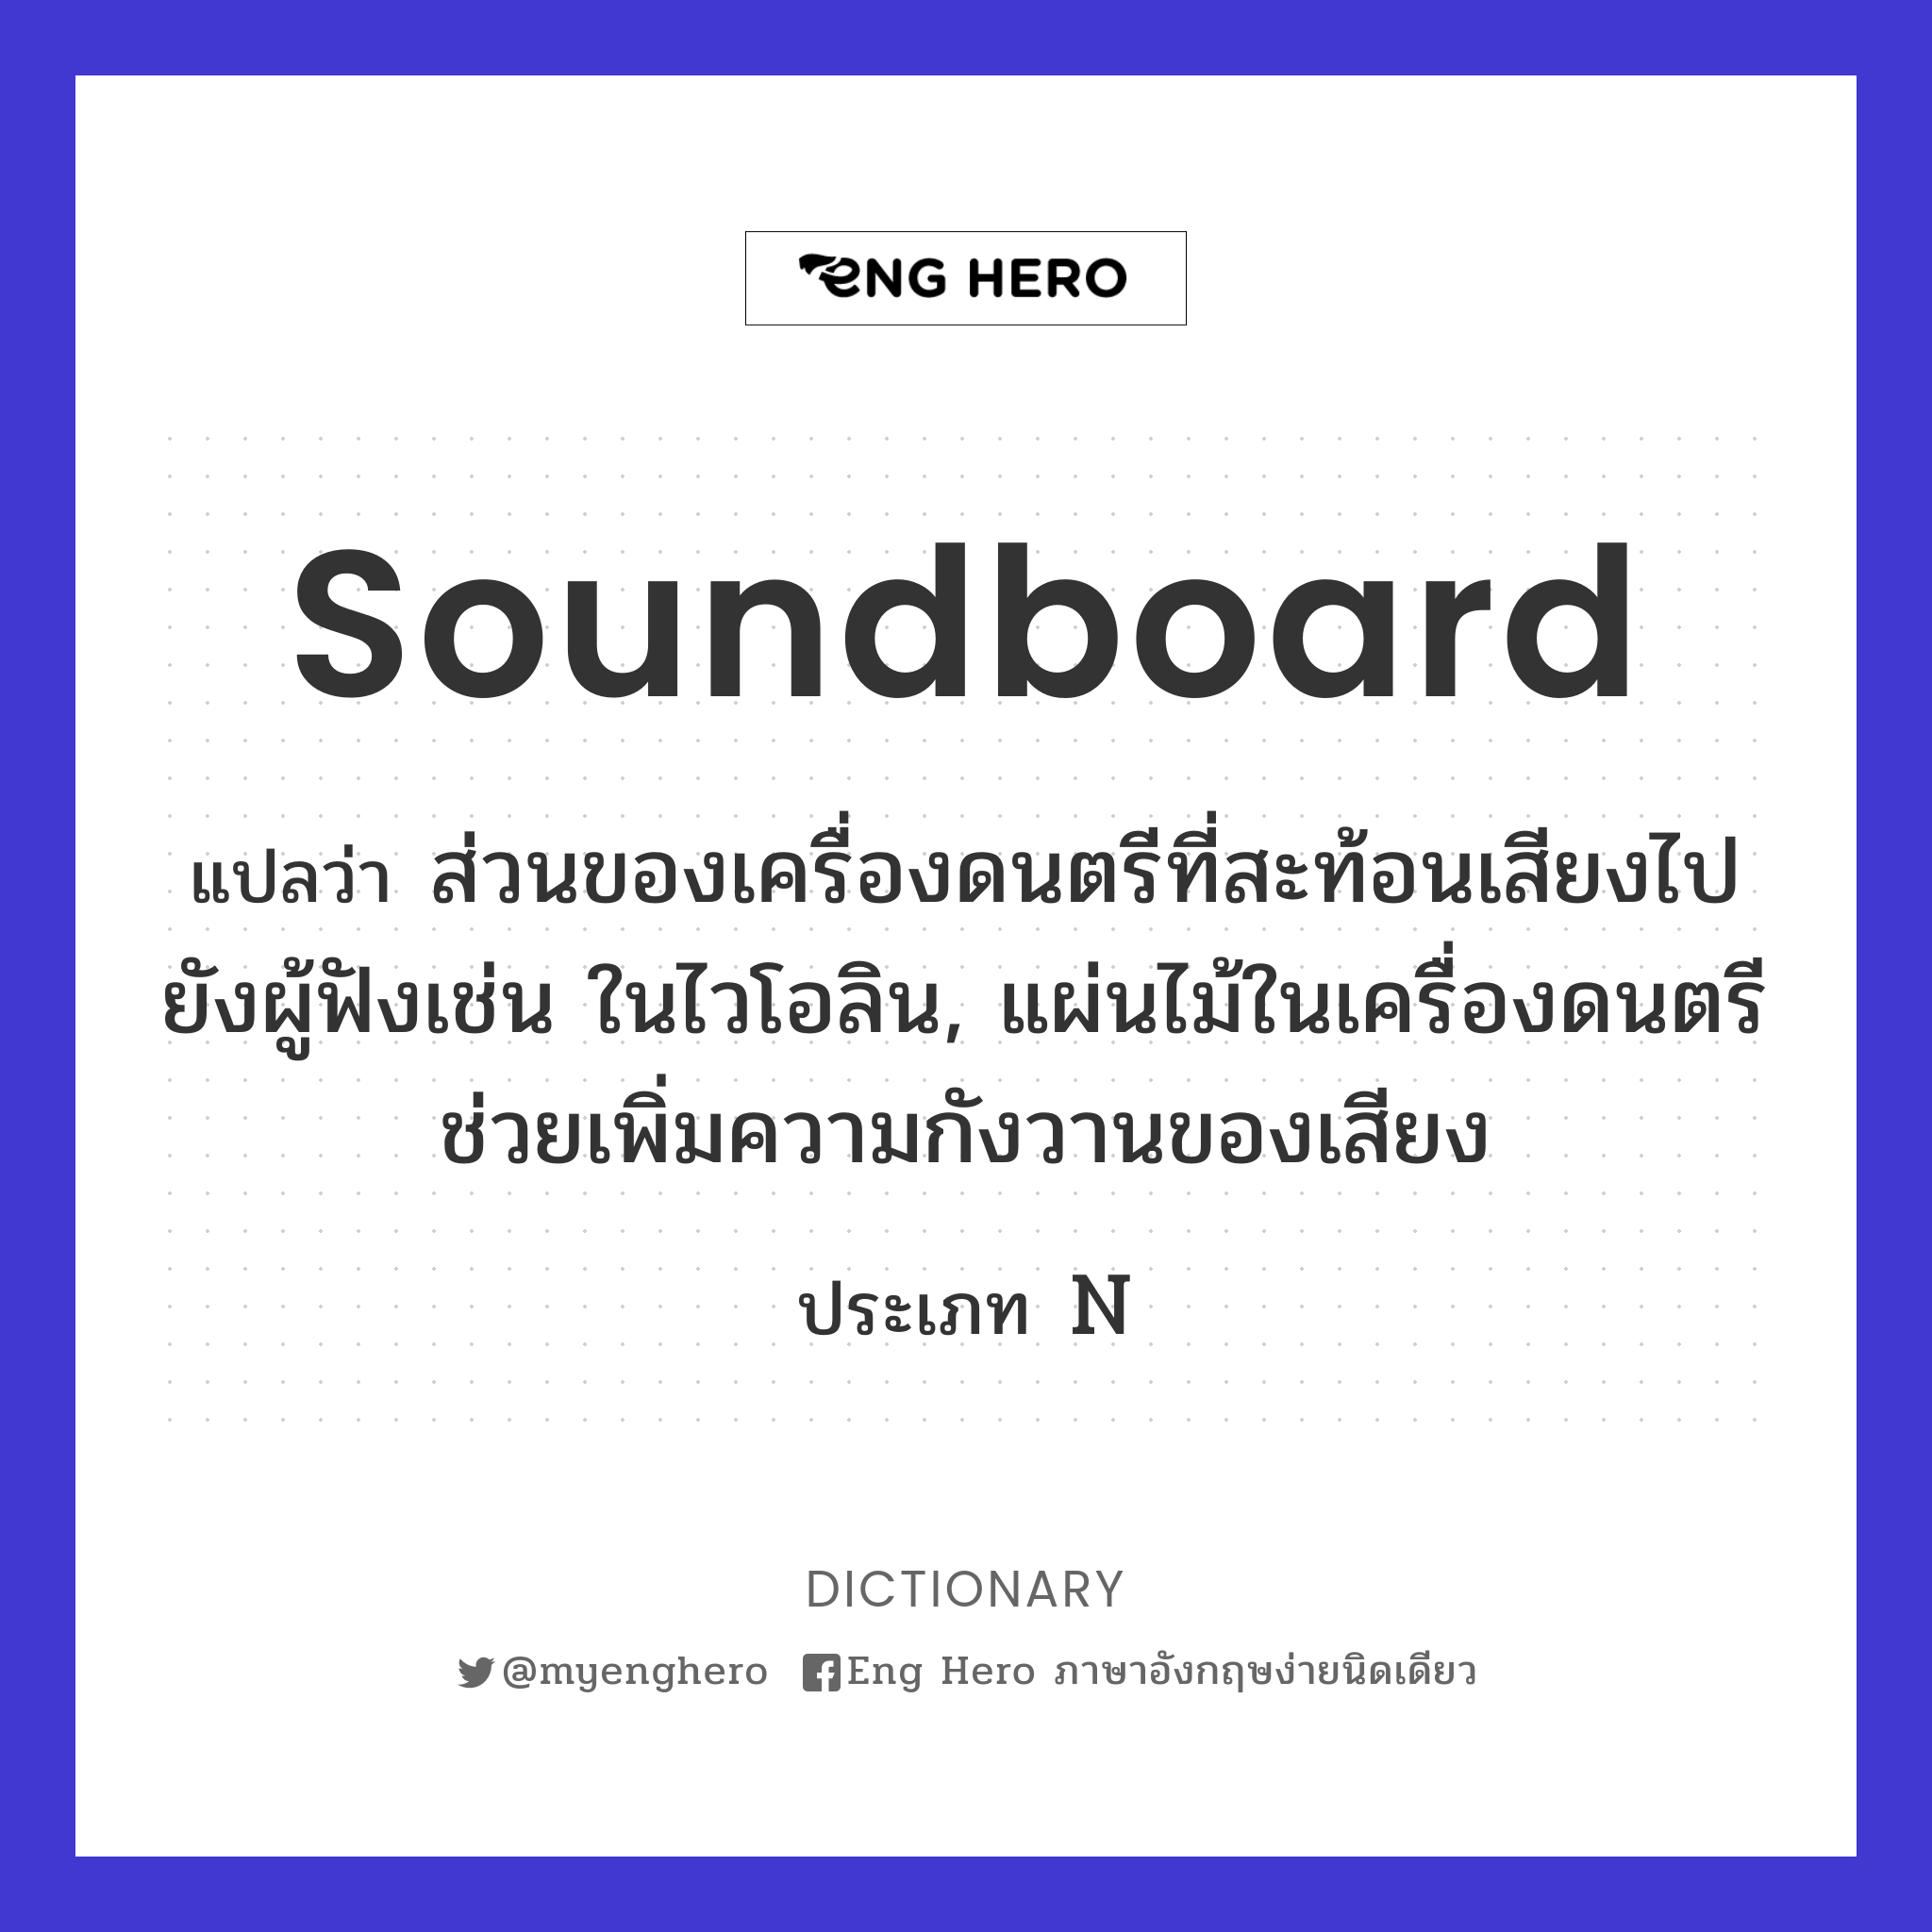 soundboard